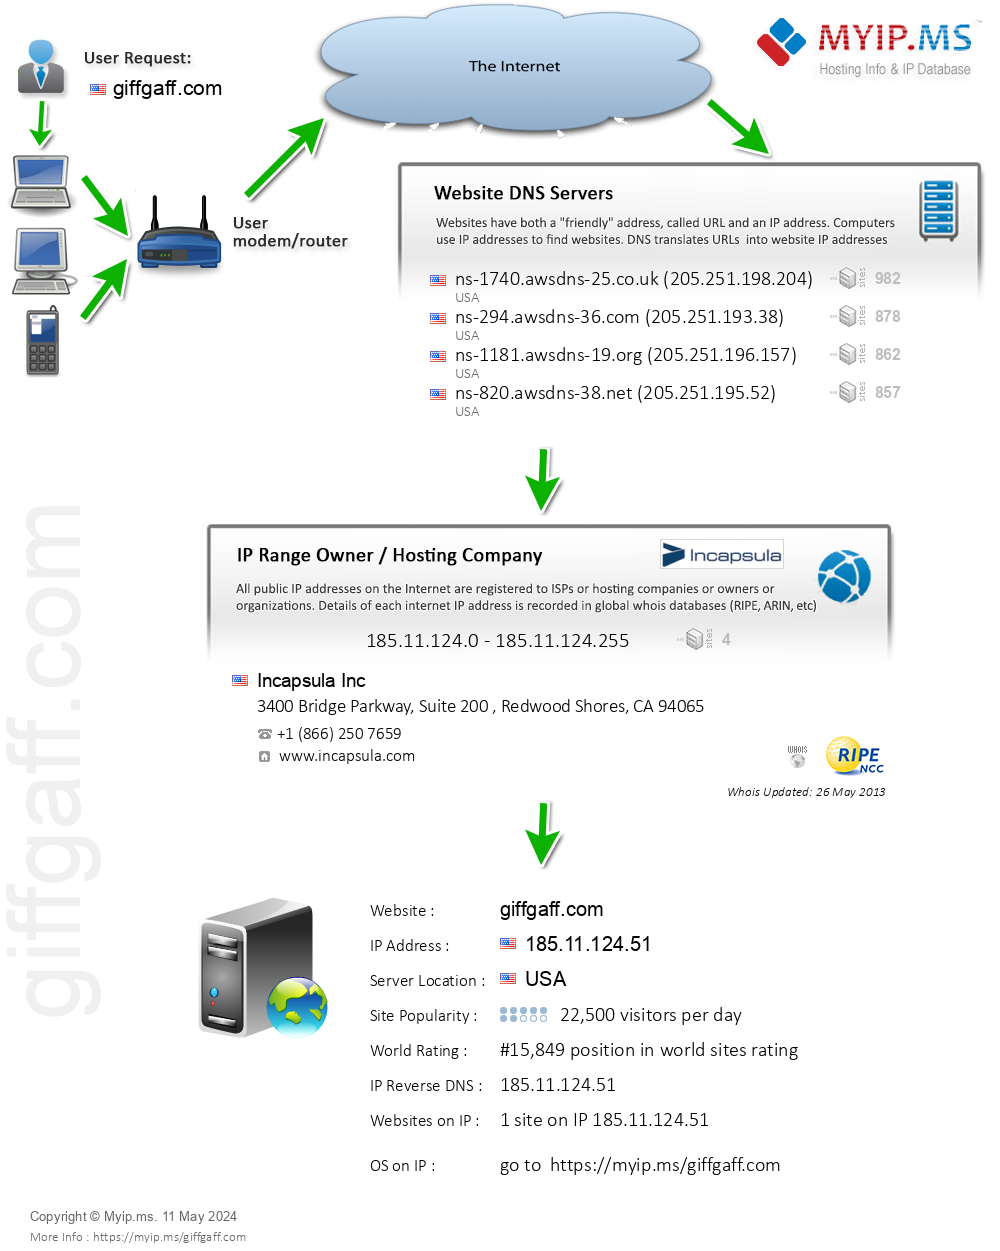 Giffgaff.com - Website Hosting Visual IP Diagram